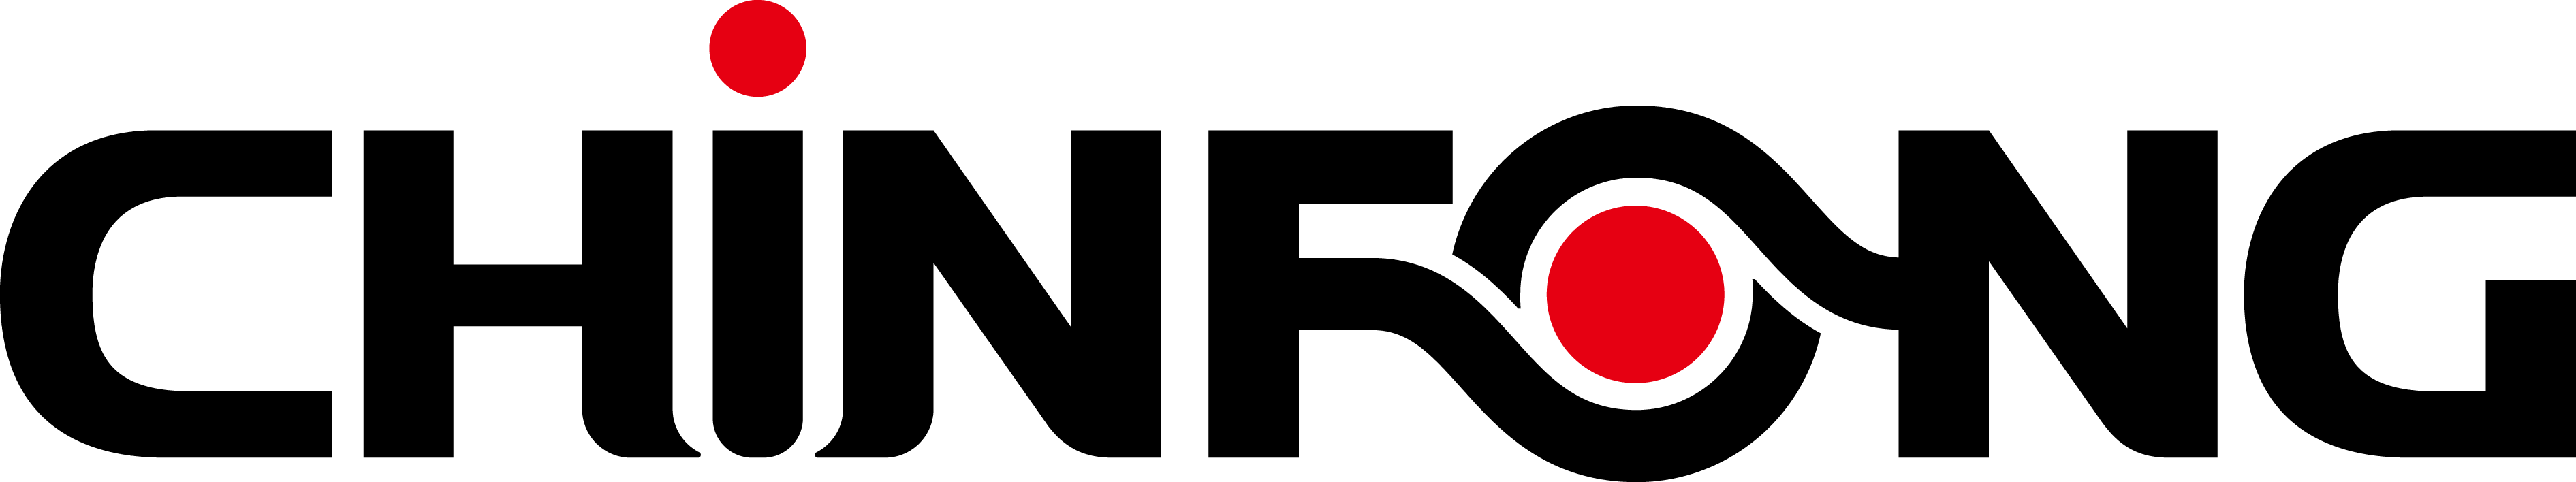 CHIN FONG logo